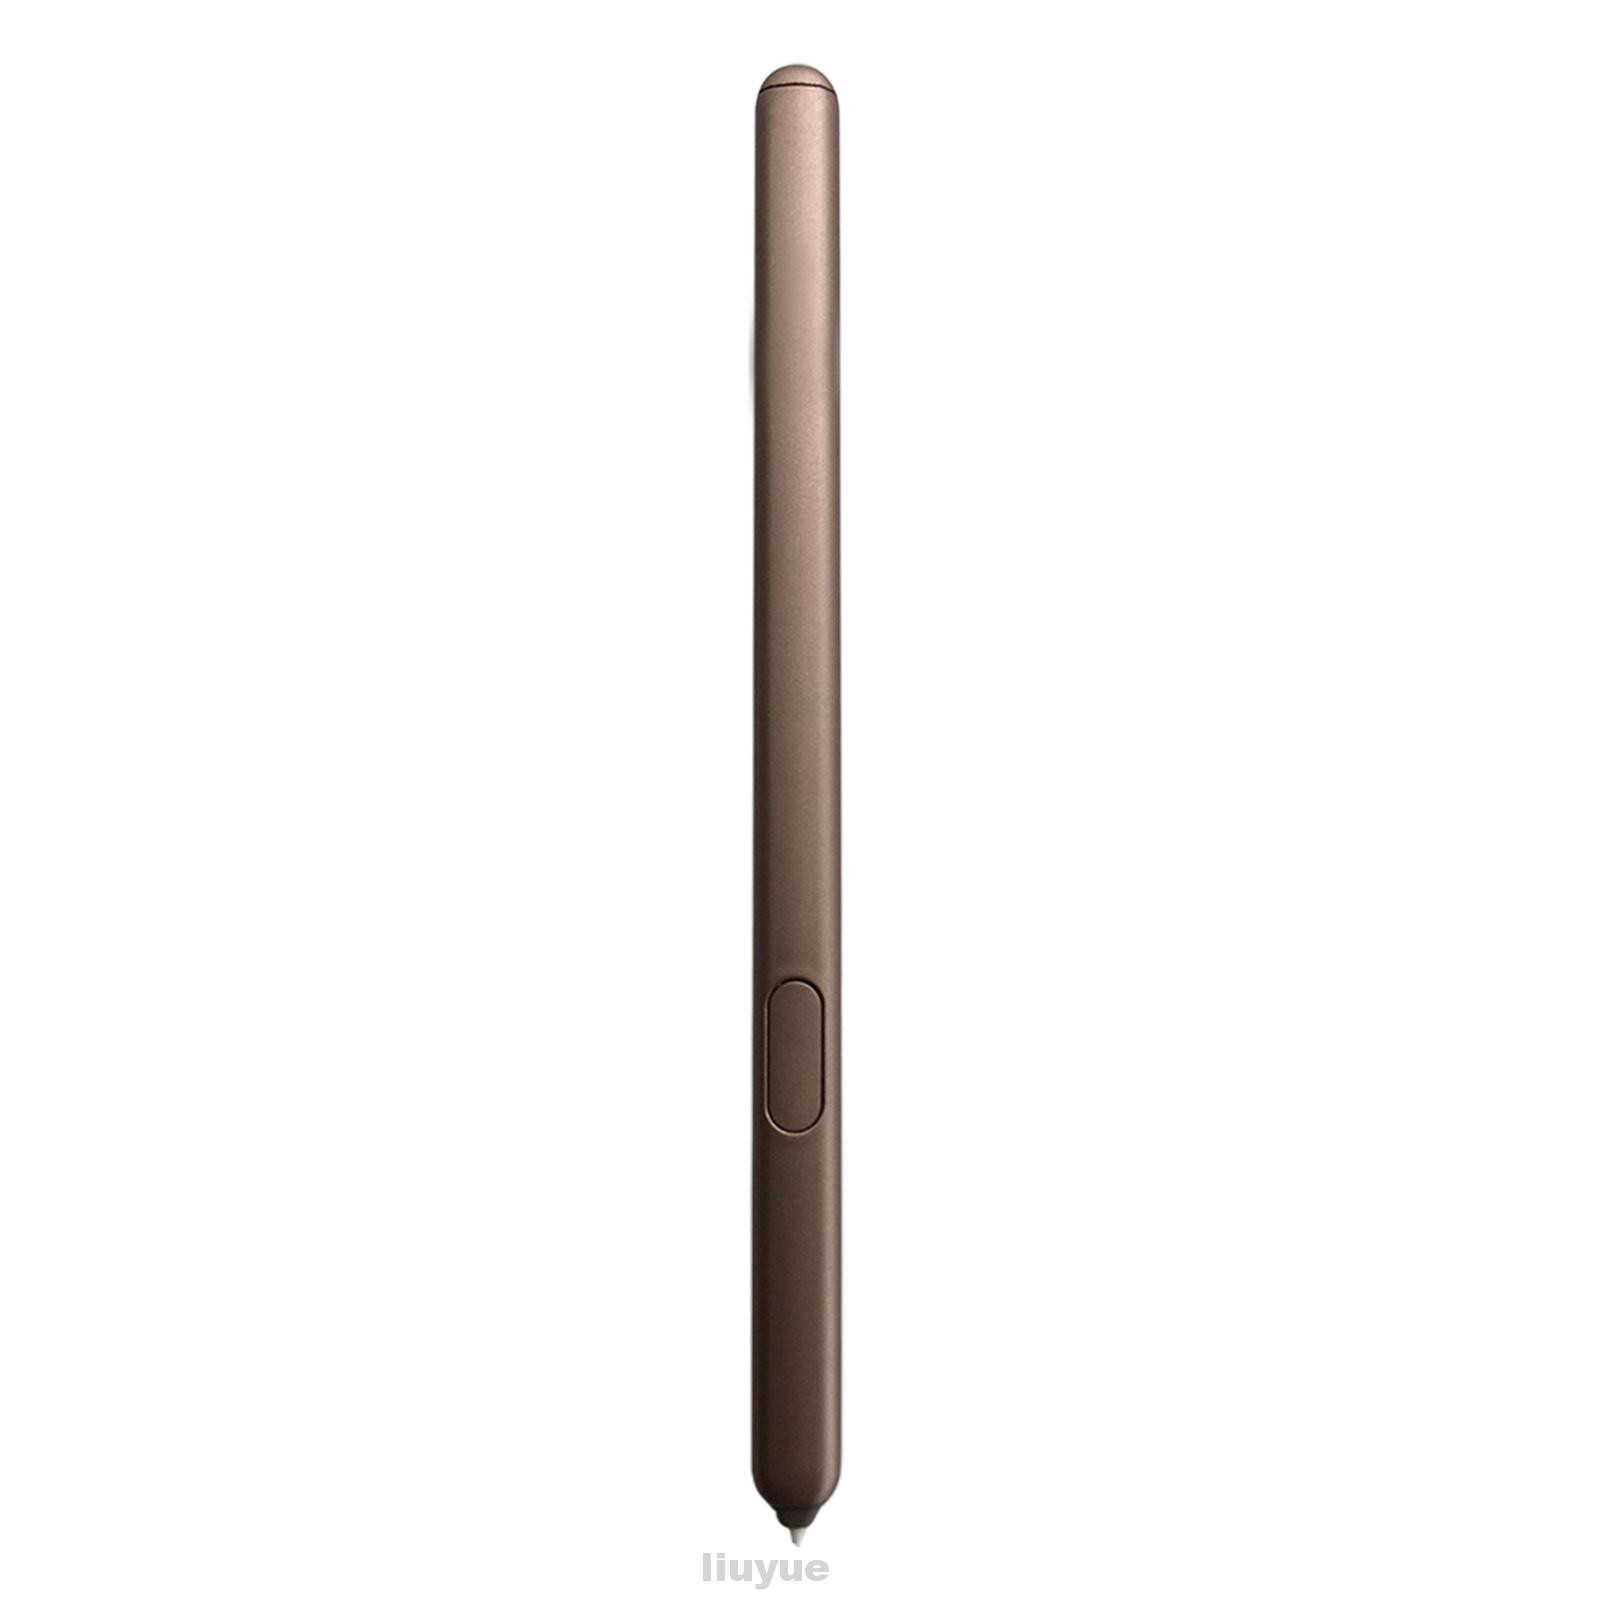 Bút Cảm Ứng Siêu Nhẹ Cho Samsung Tab S6 Lite